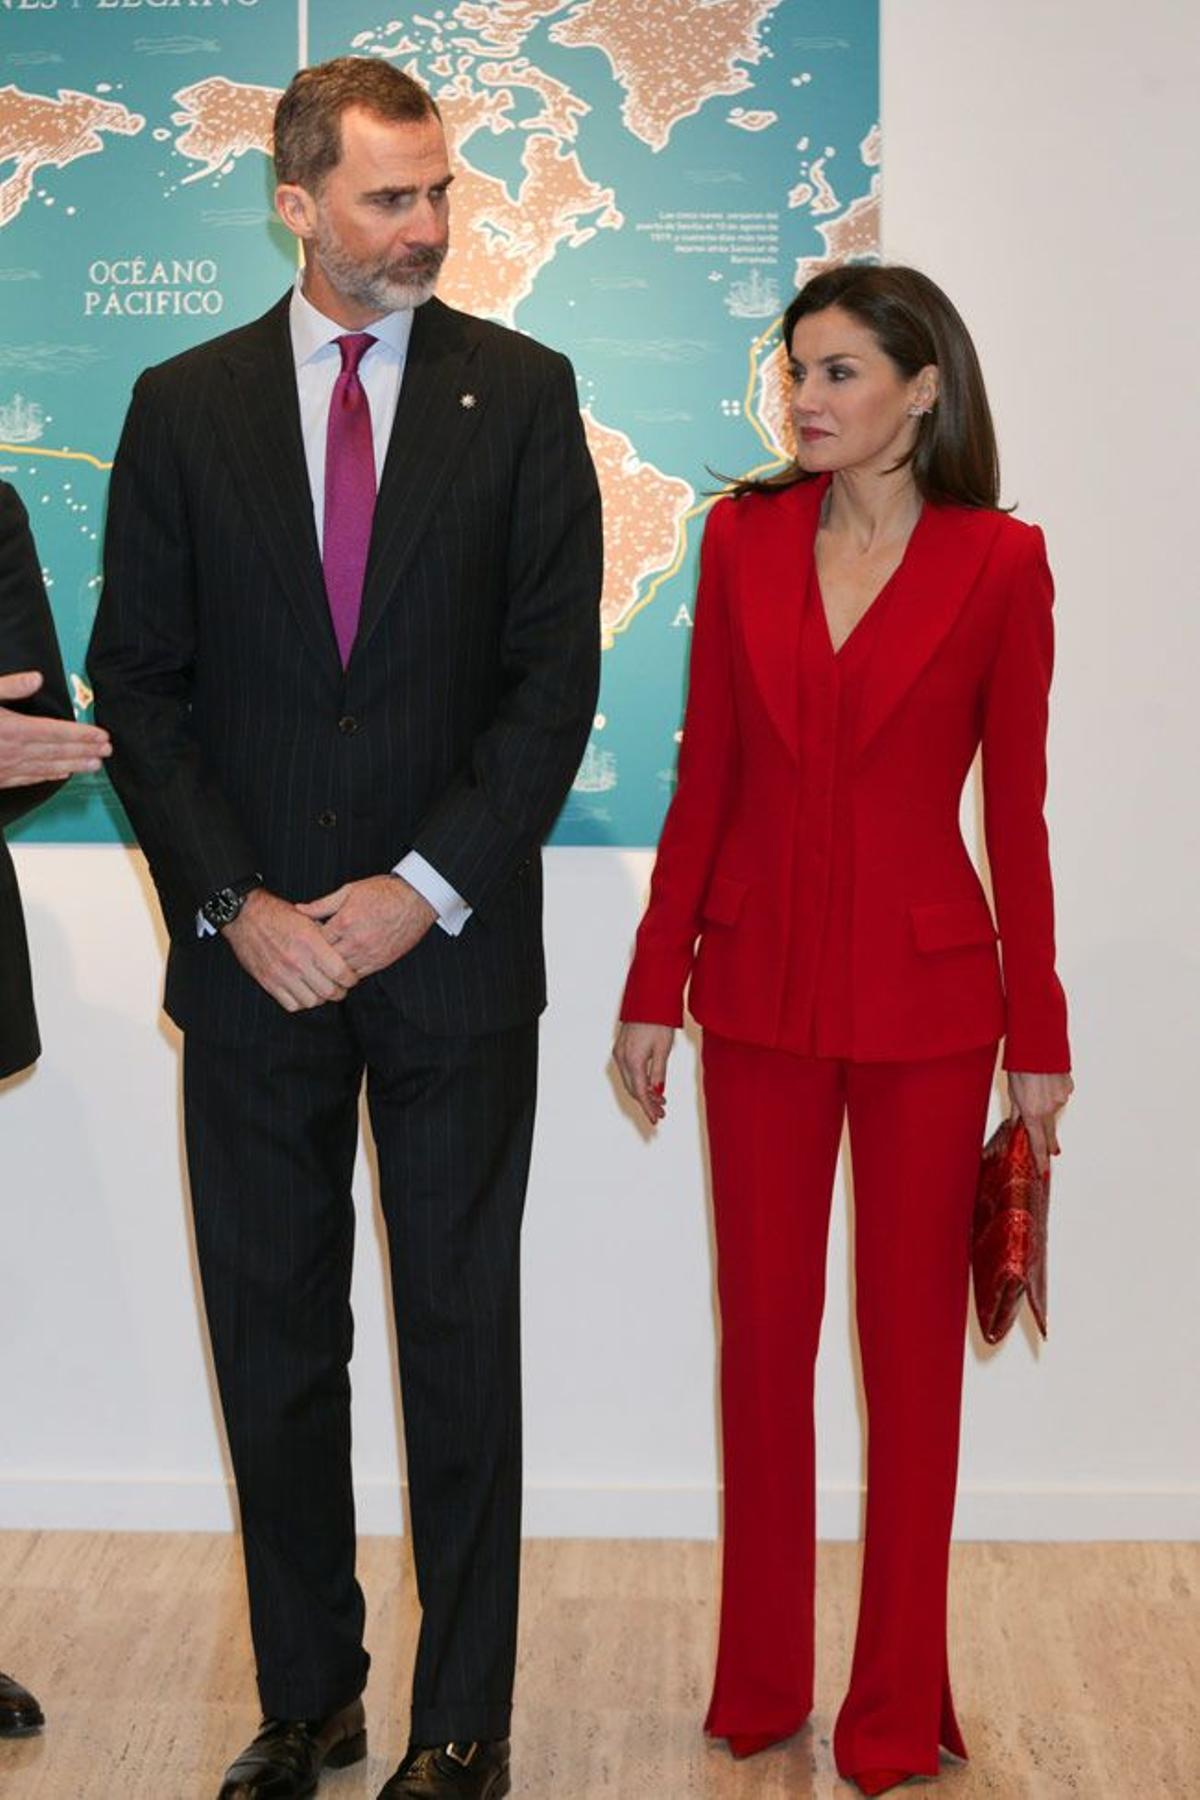 El rey Felipe VI y Letizia Ortiz con traje de chaqueta rojo